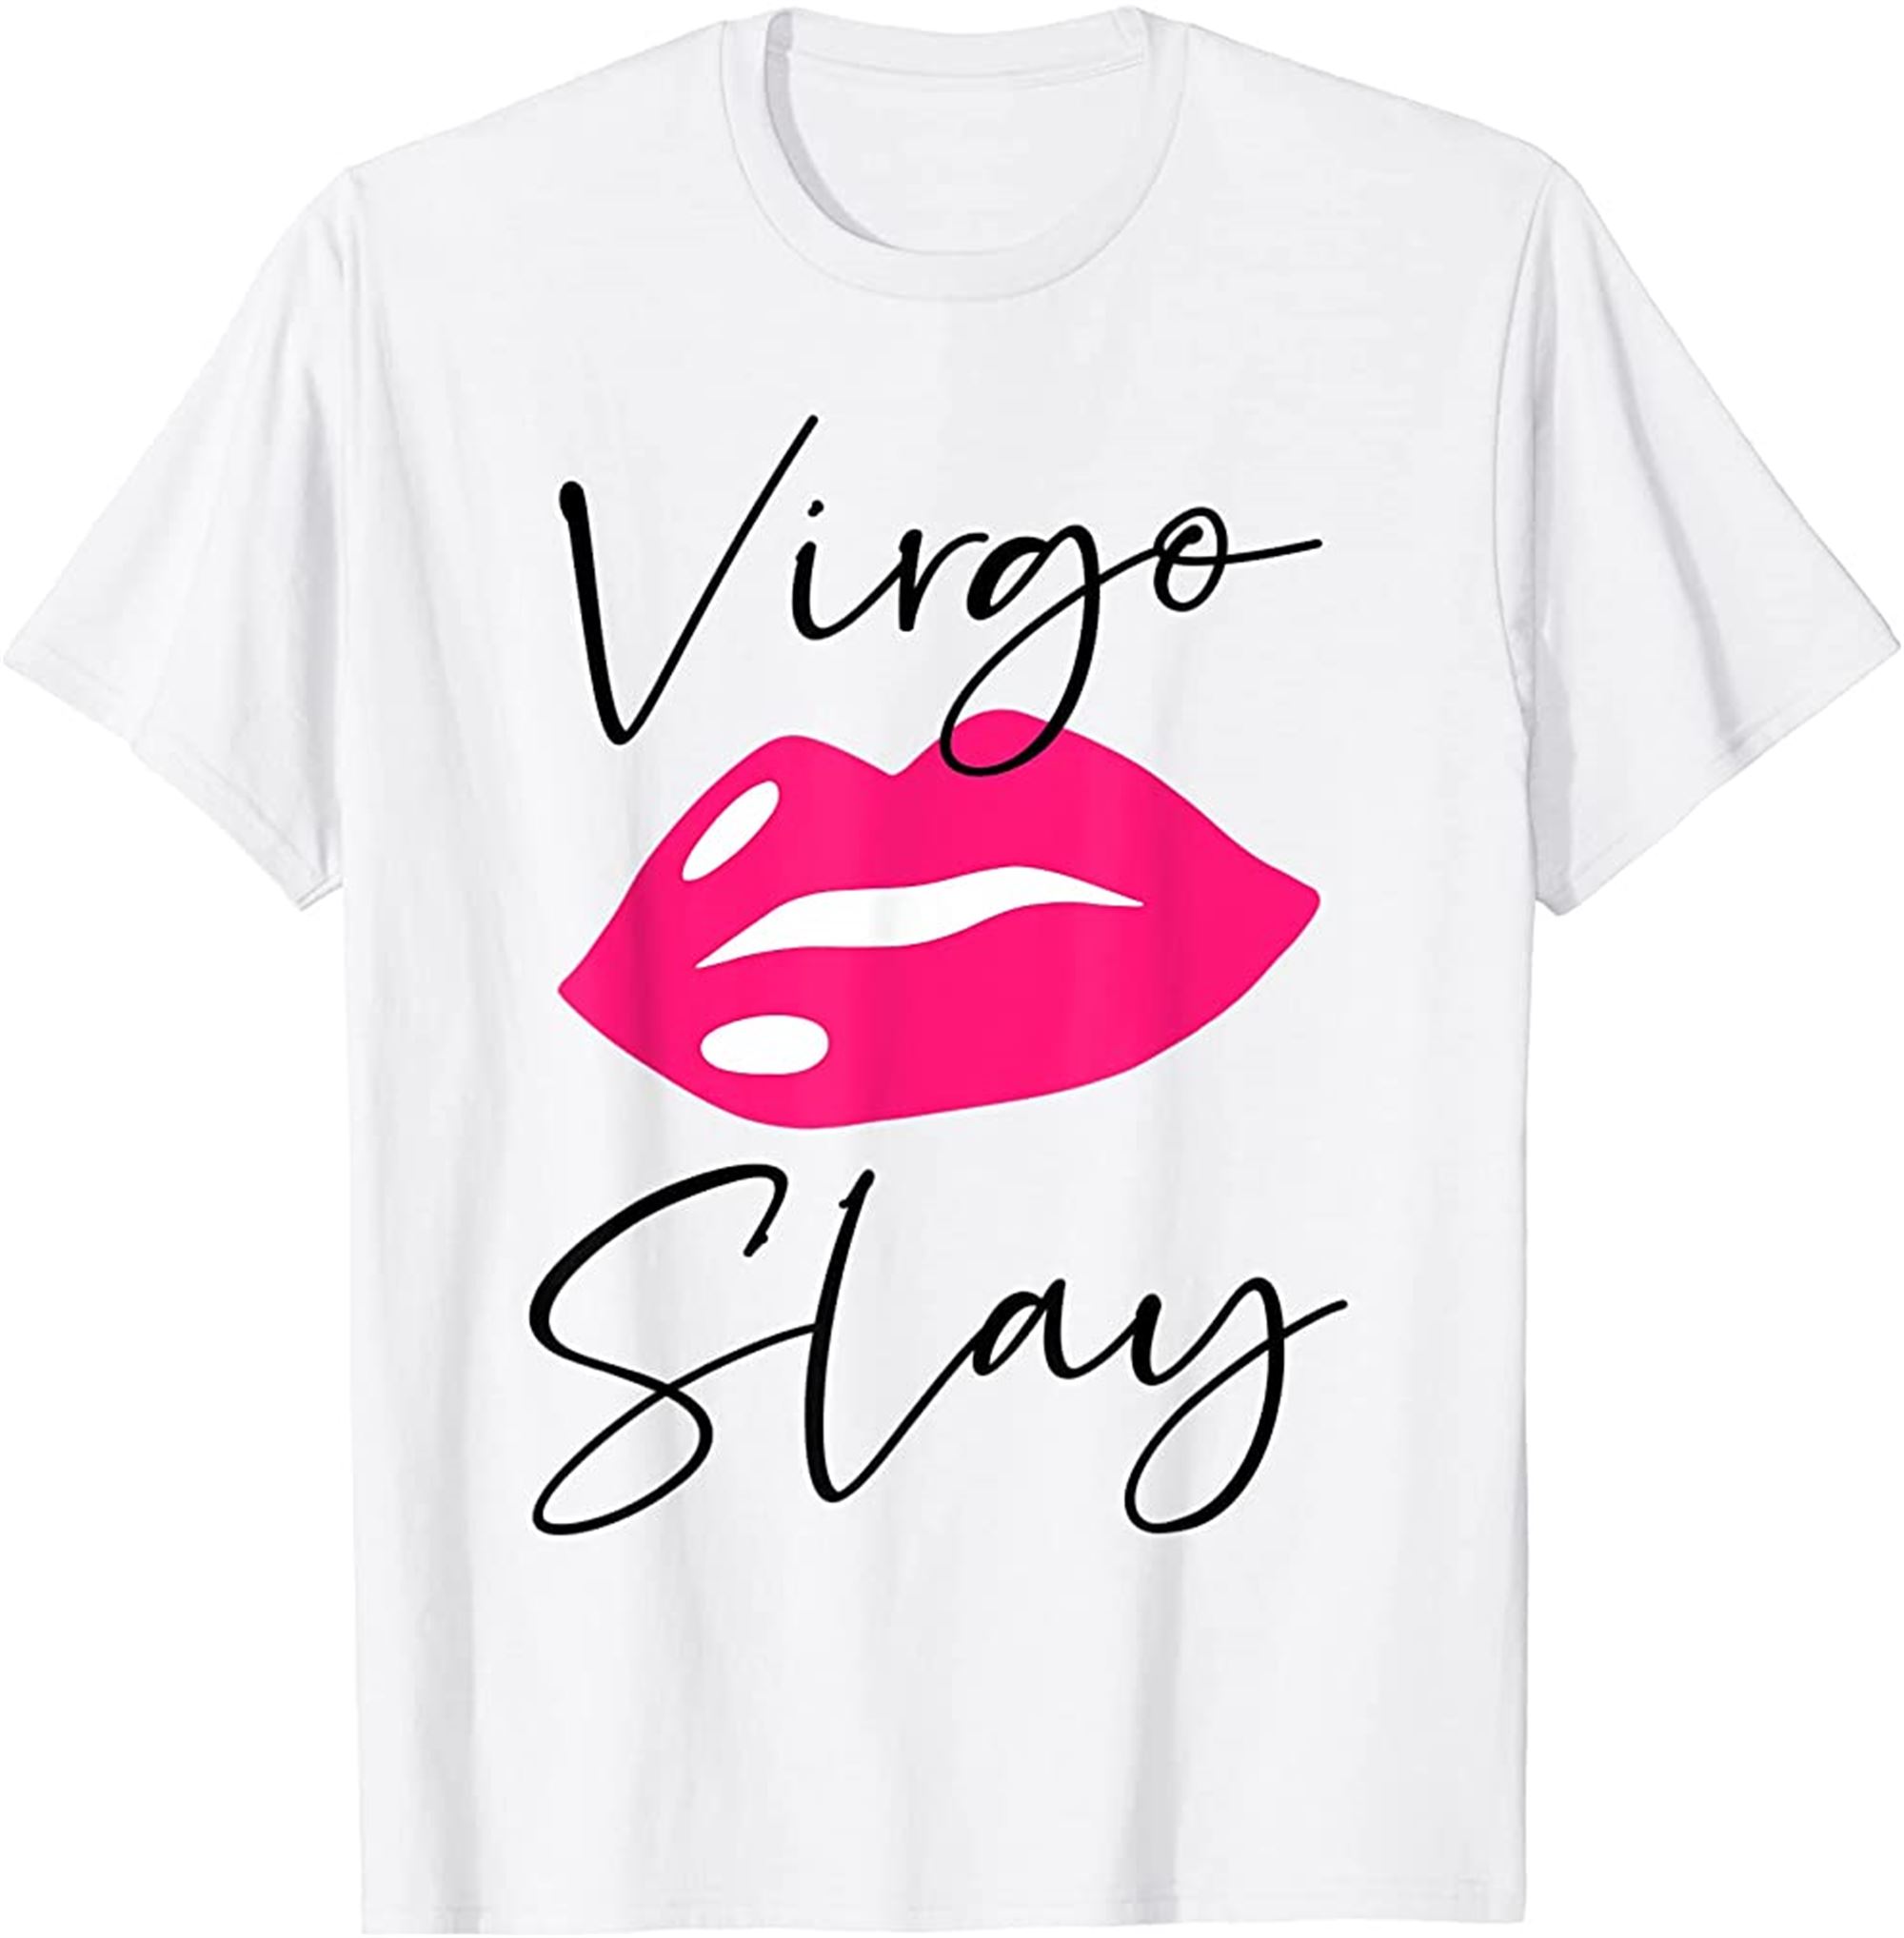 Sexy Pink Lipstick Lips Virgo Slay Birthday Birthday T-shirt Full Size Up To 5xl